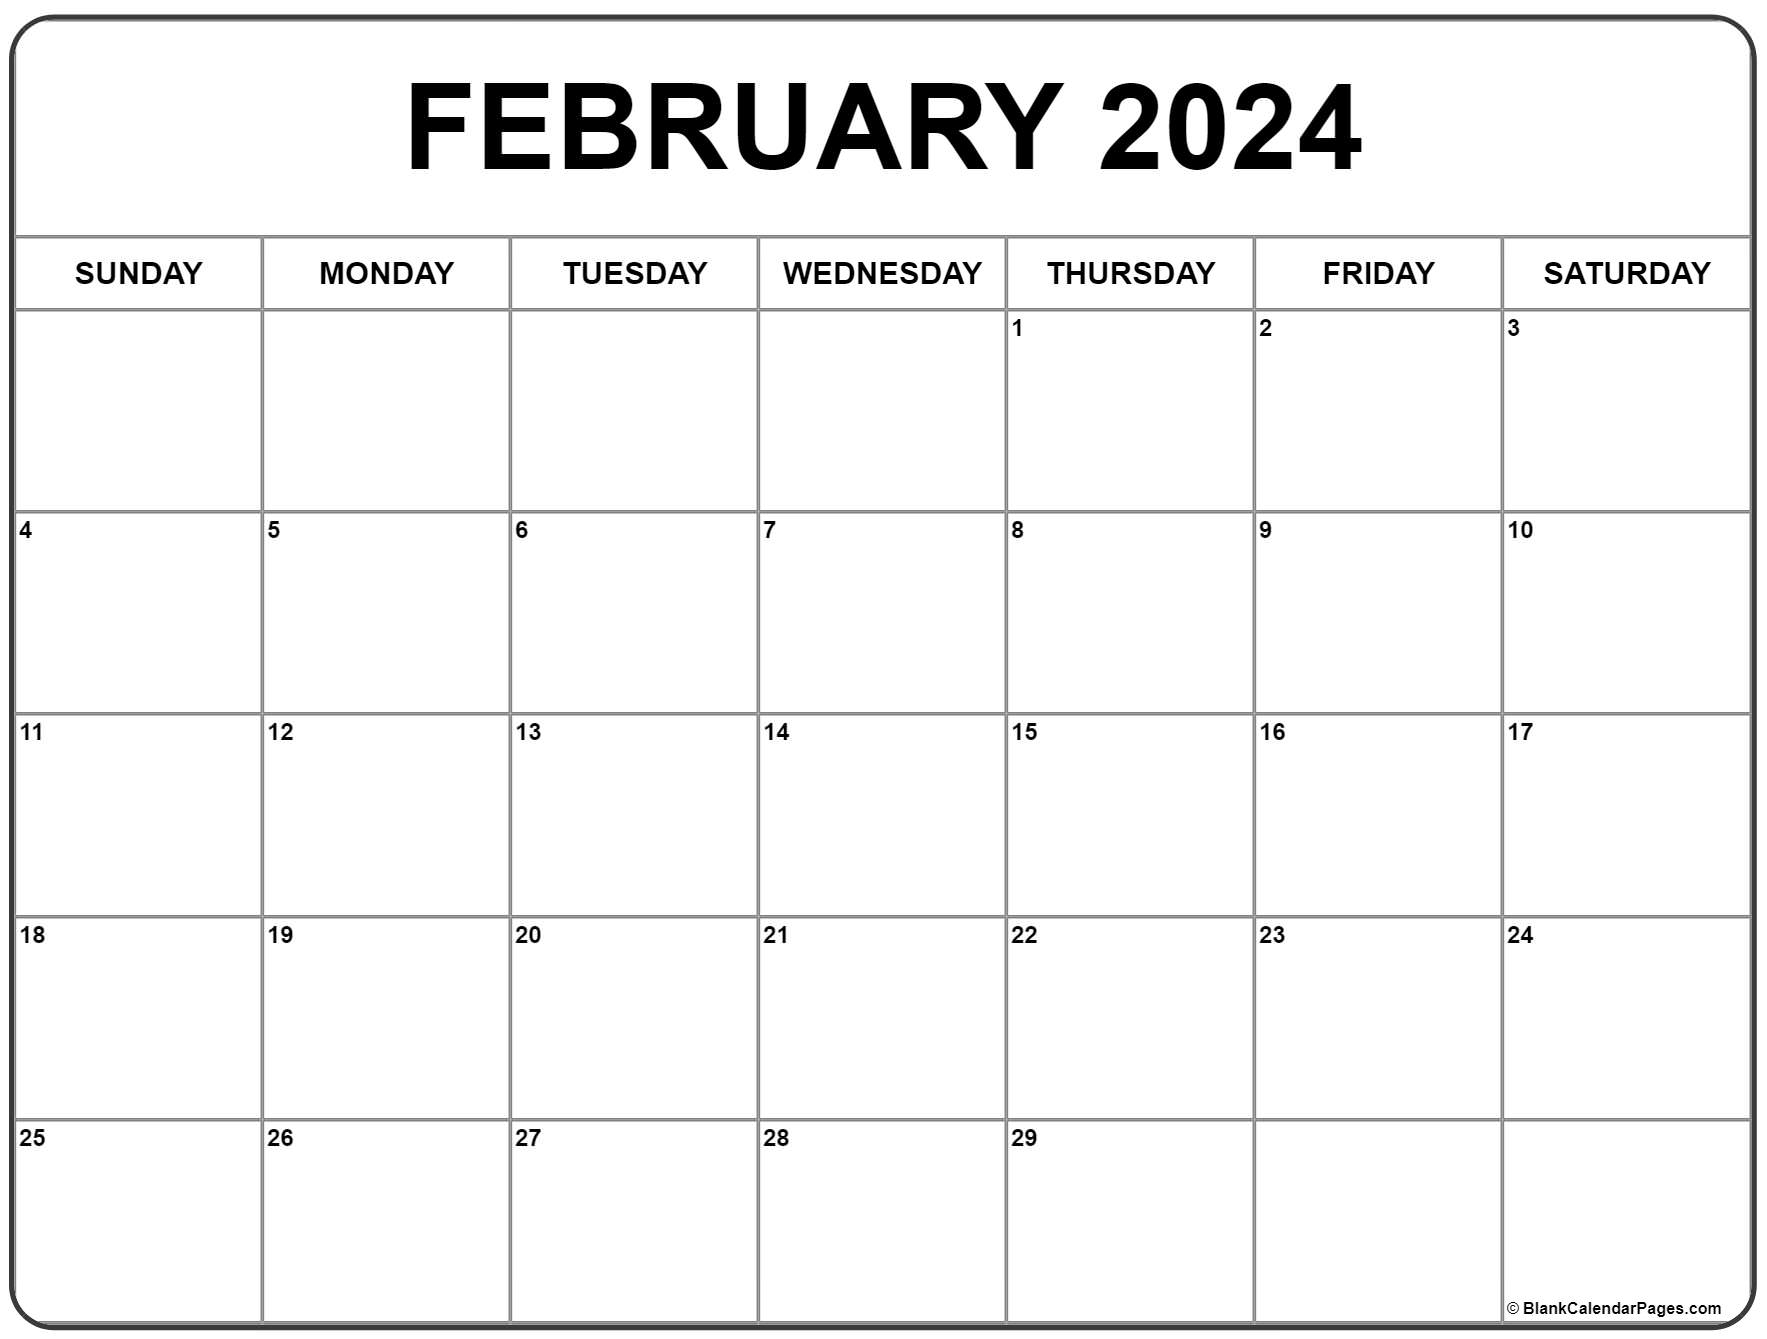 February 2024 Calendar | Free Printable Calendar for Calendar Feb 2024 Printable